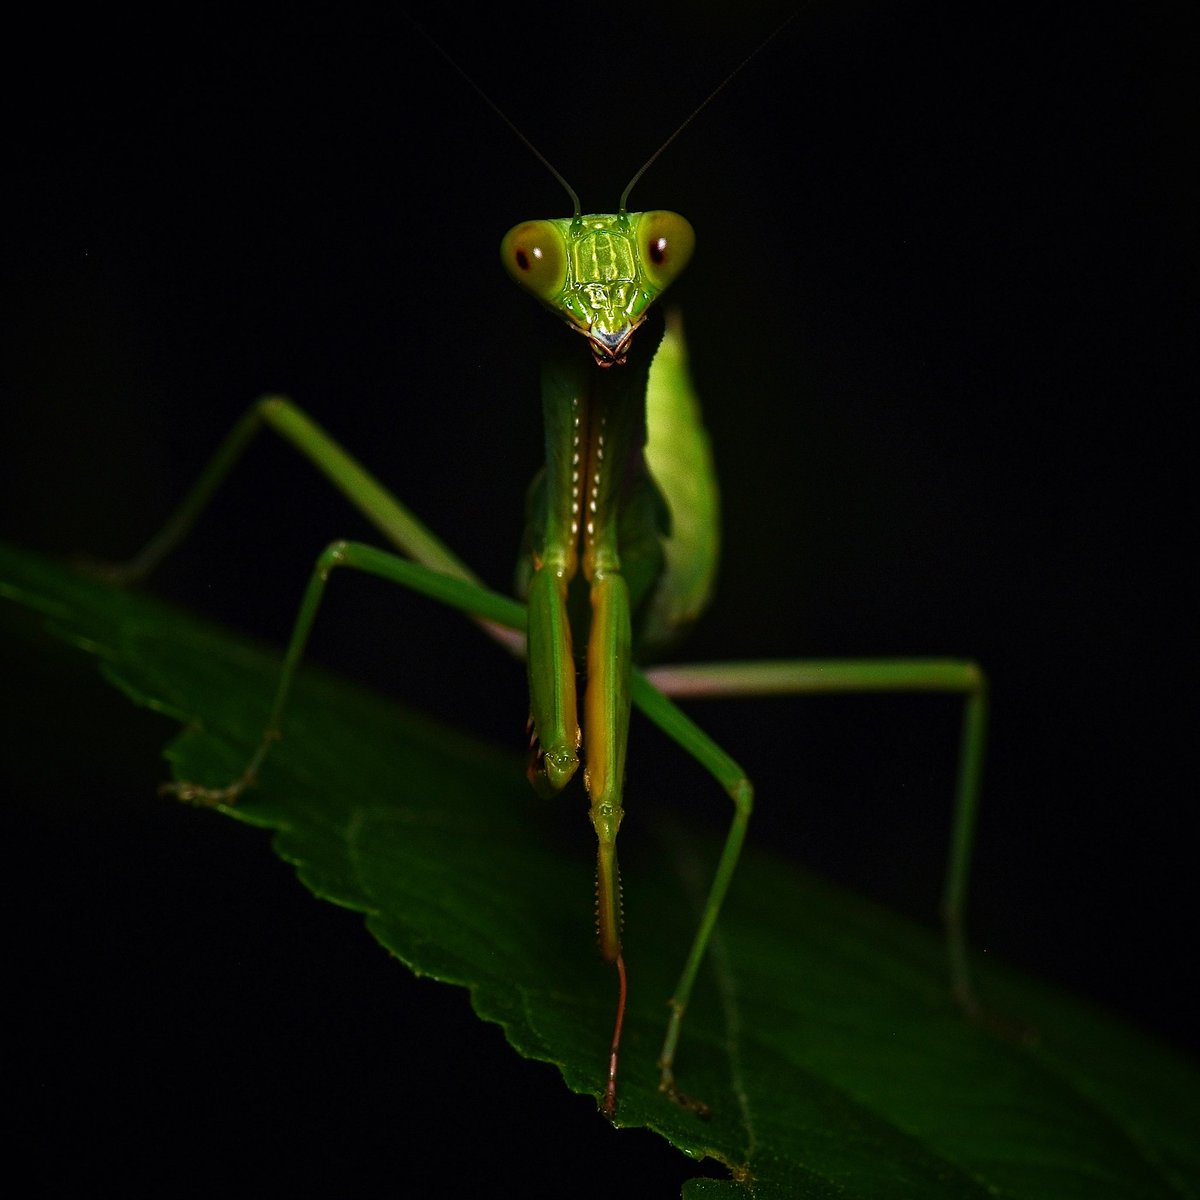 Praying mantis on a nighttime hunt